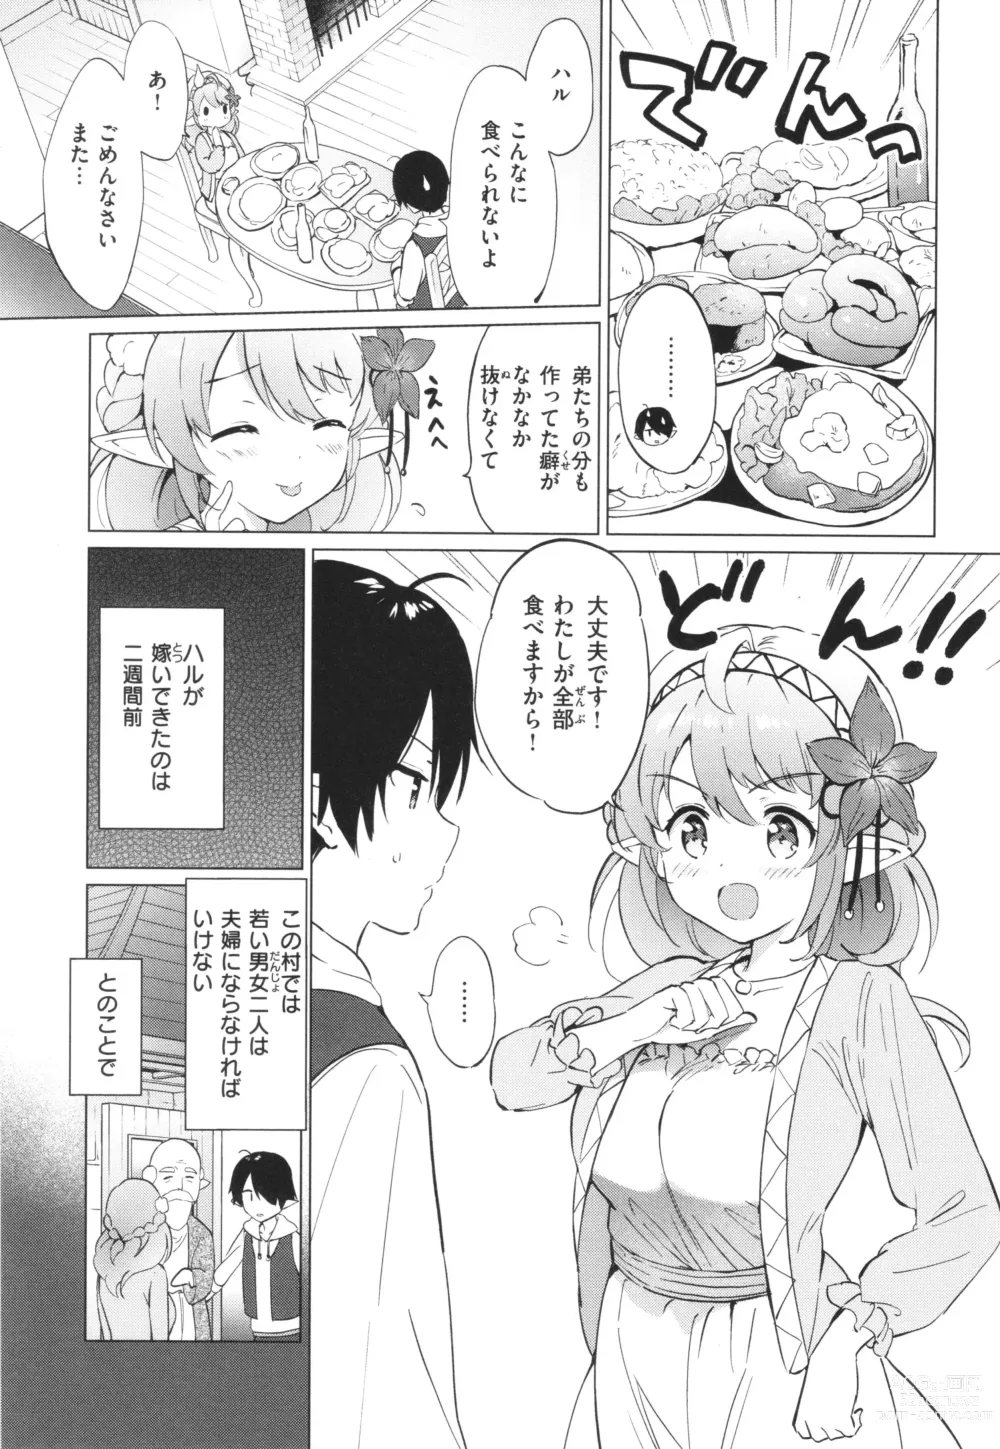 Page 8 of manga Mitsugetsu Paradise - Honeymoon Paradise